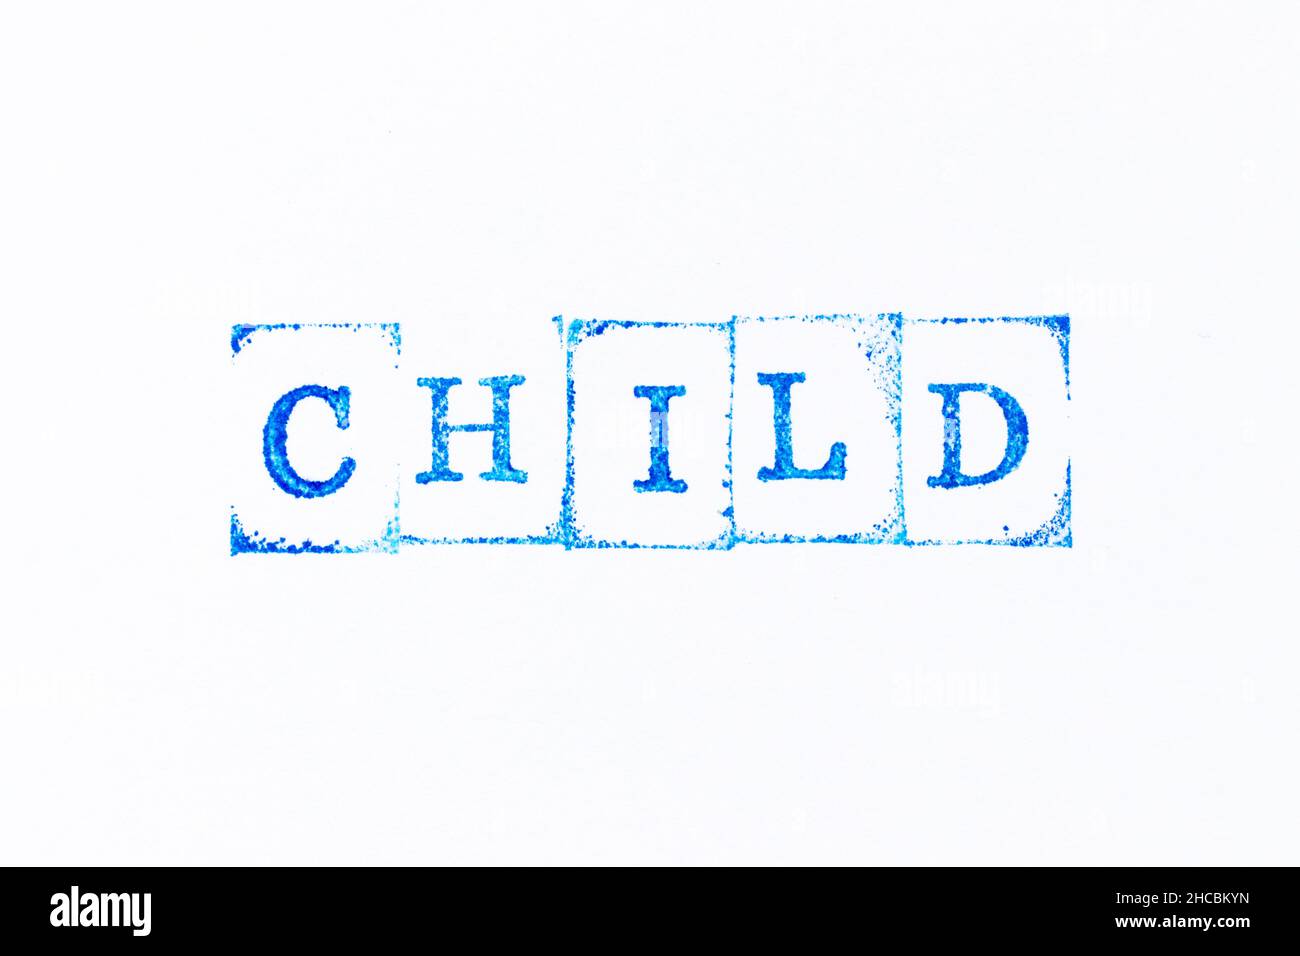 Blaue Farbe Tinte Gummi Stempel in Wort Kind auf weißem Papier Hintergrund Stockfoto